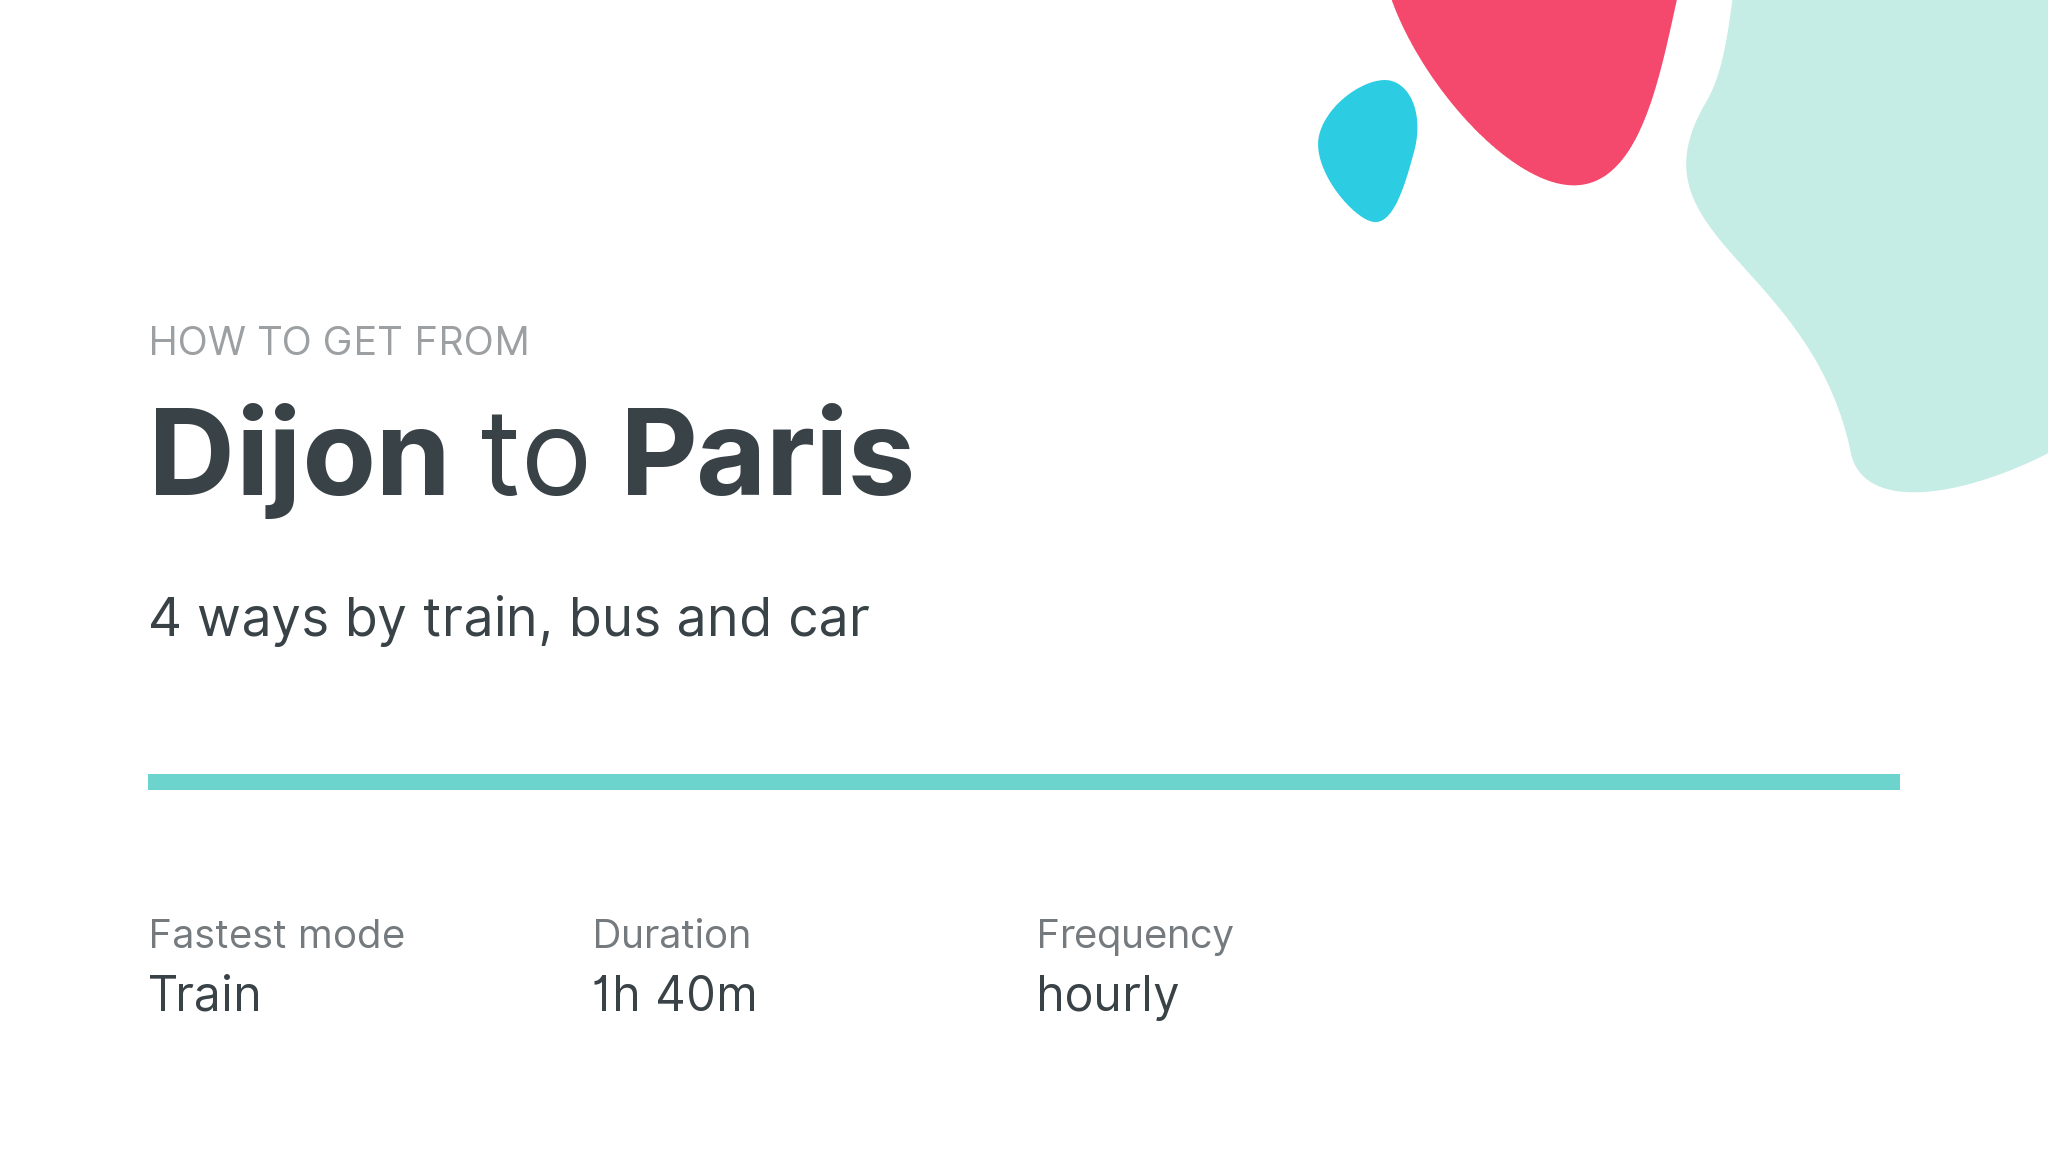 How do I get from Dijon to Paris